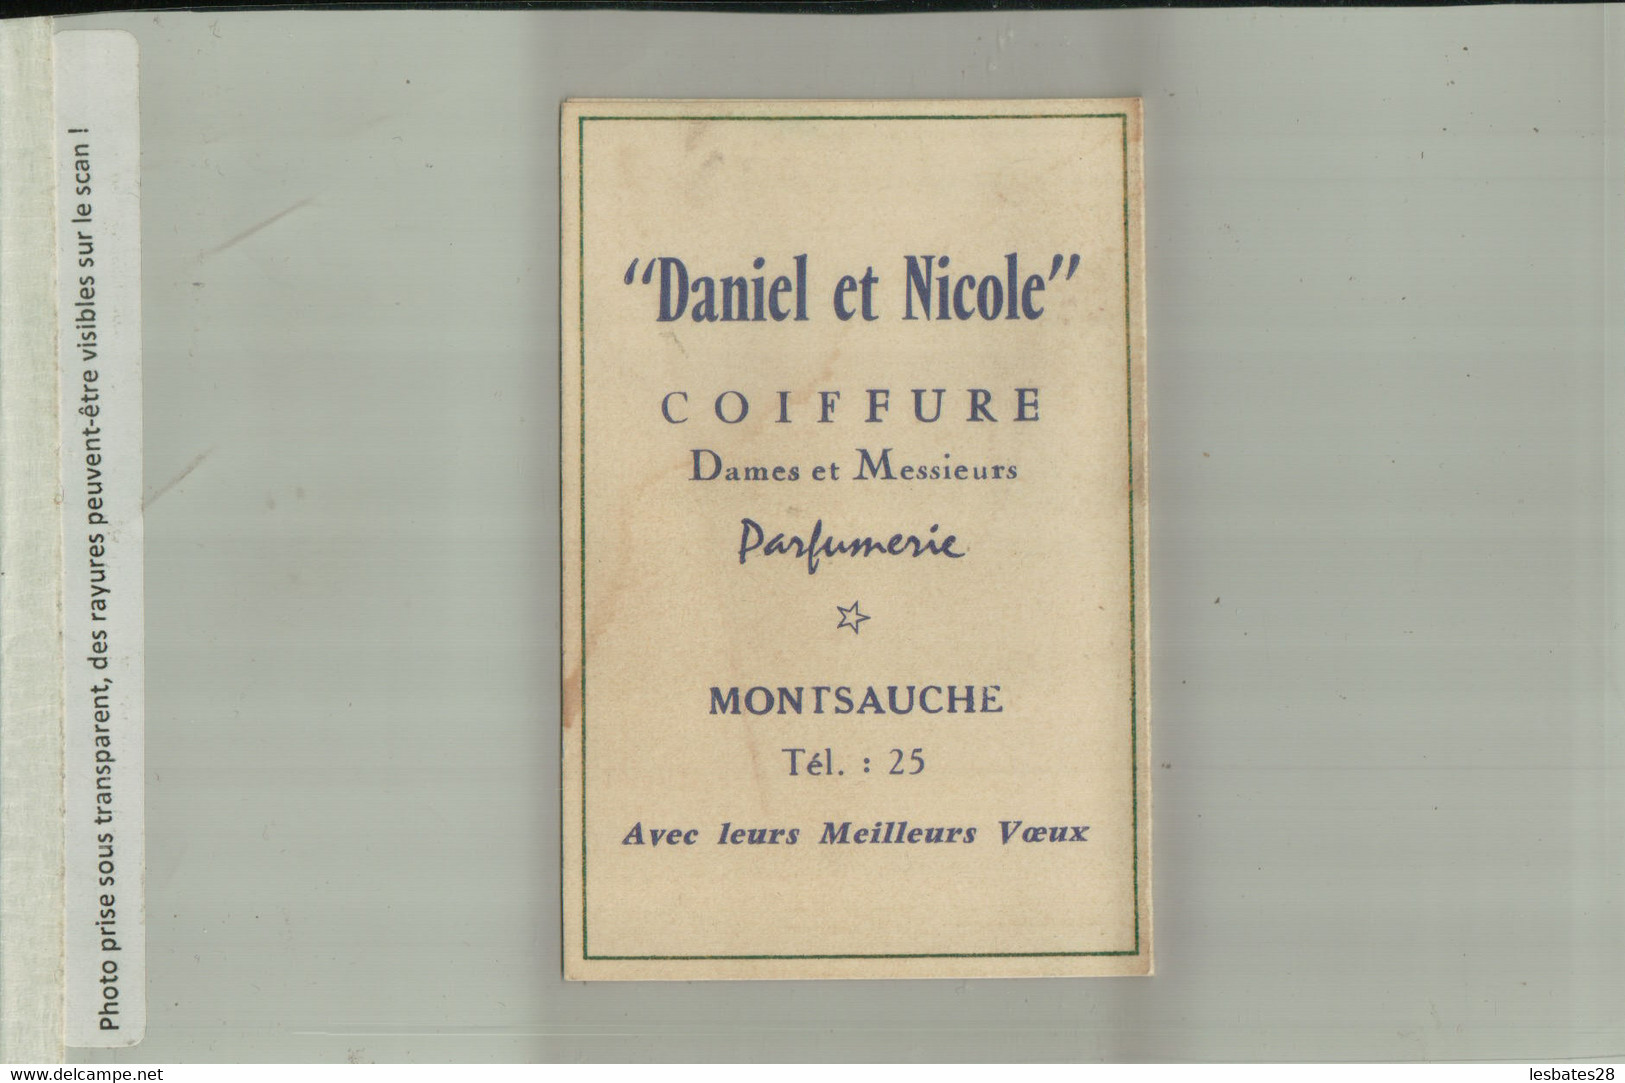 PARFUM RAMAGE BOURJOIS PARIS CALENDRIER 1964 Publicité  Parfumerie Coifure  MONTSAUCHE   (AVRI 2021 ABL 074) - Klein Formaat: 1961-70